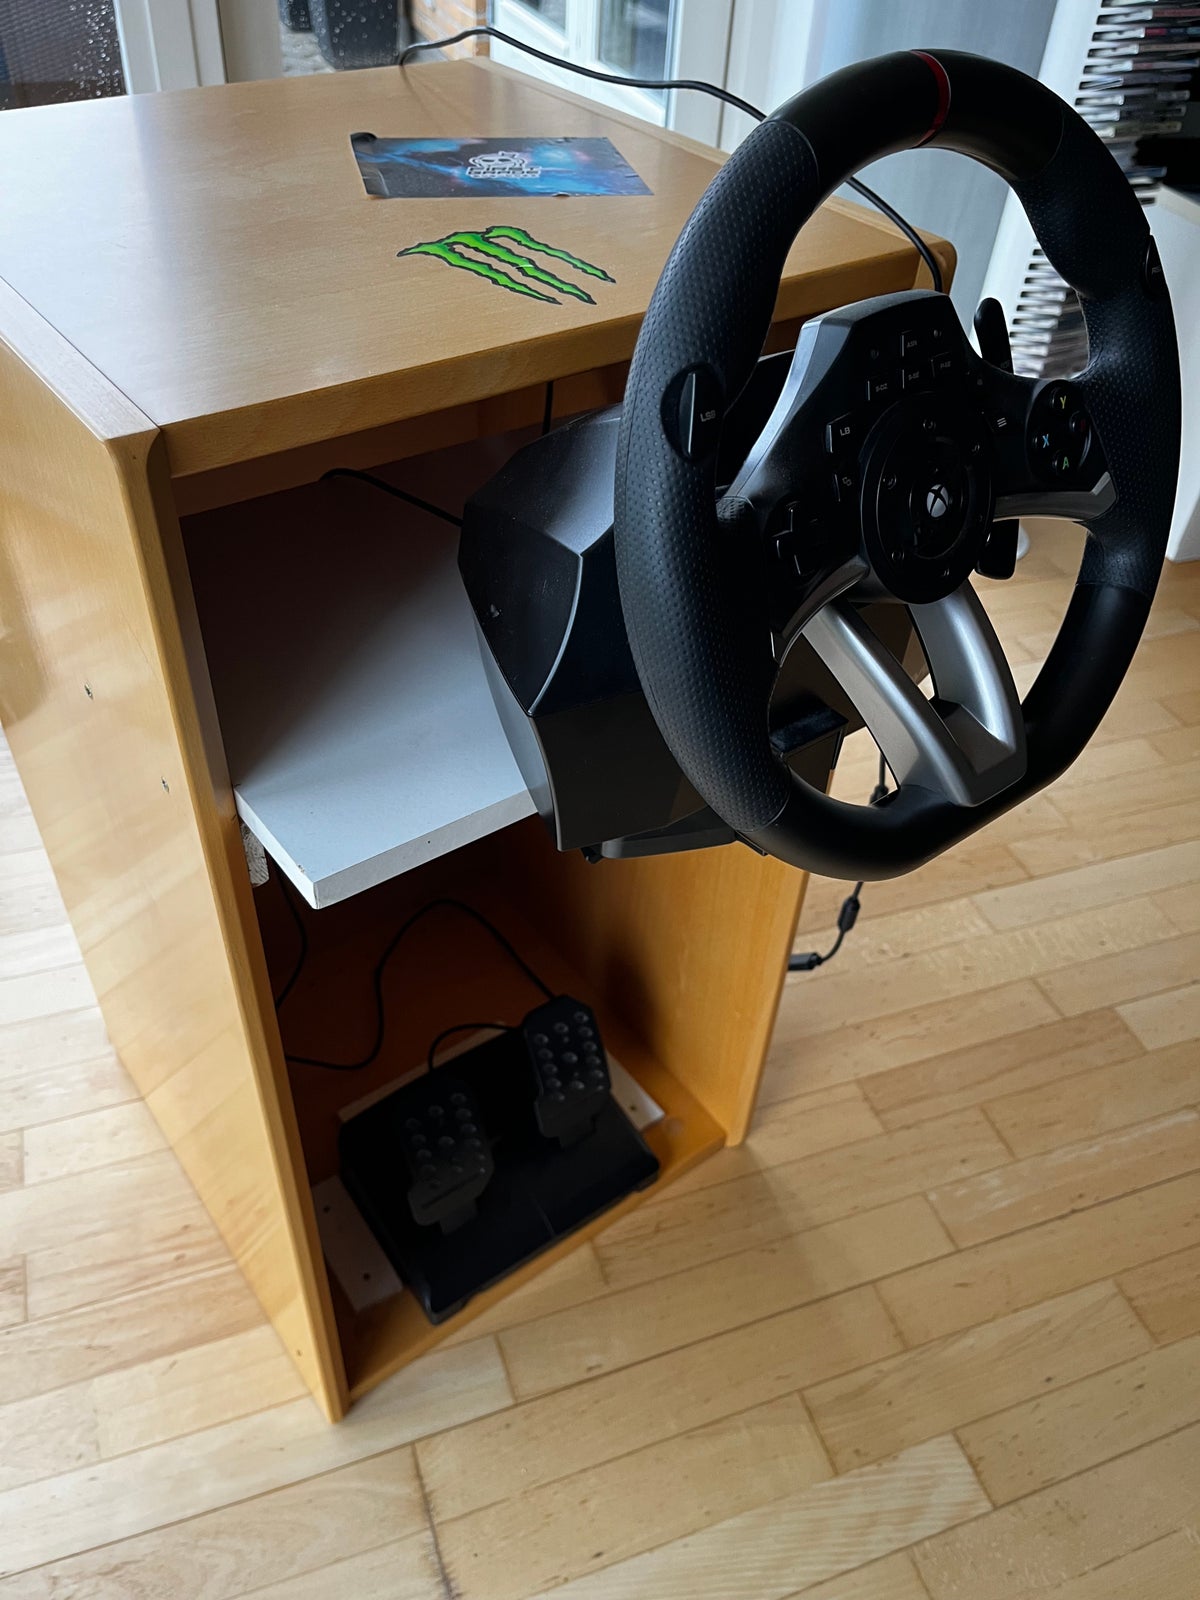 Xbox, Hori Racing Wheel Overdrive, God